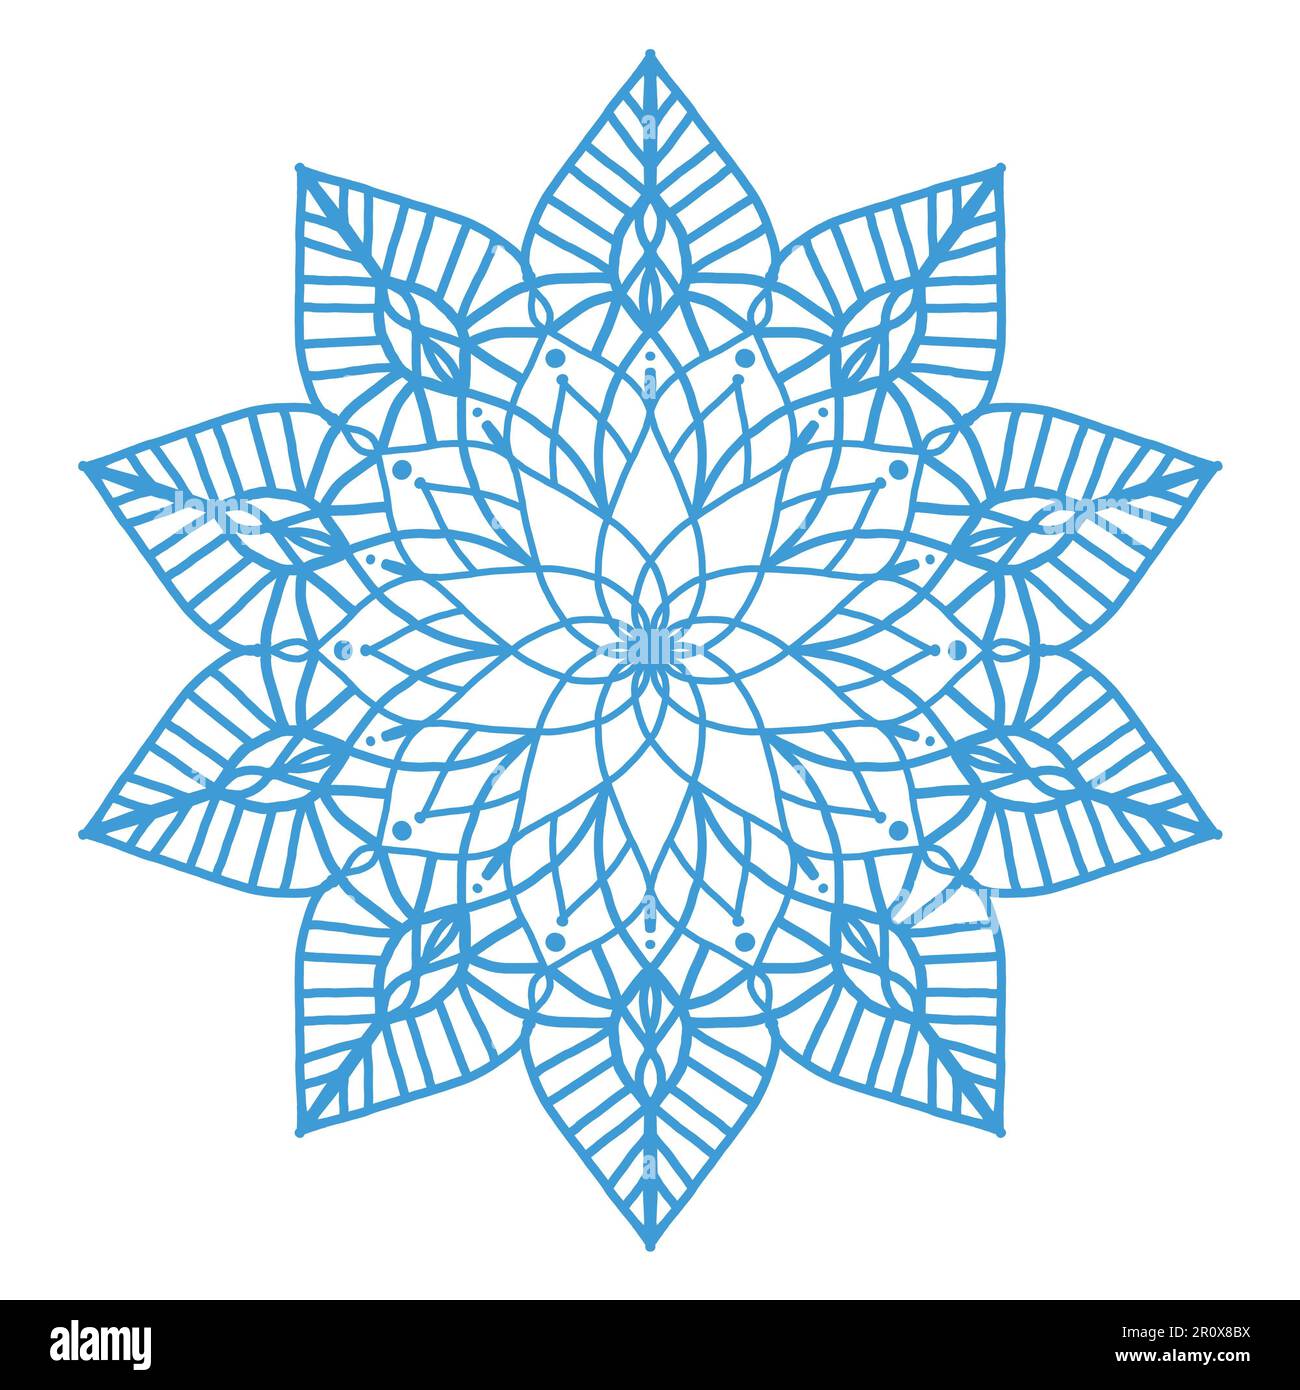 Abstraktes Mandala-Blumendesign, Mandala-Kunstdesign, das Sie als Hintergrund, Design usw. verwenden können Dieses Mandala hat ein Blumenmotiv. Stockfoto